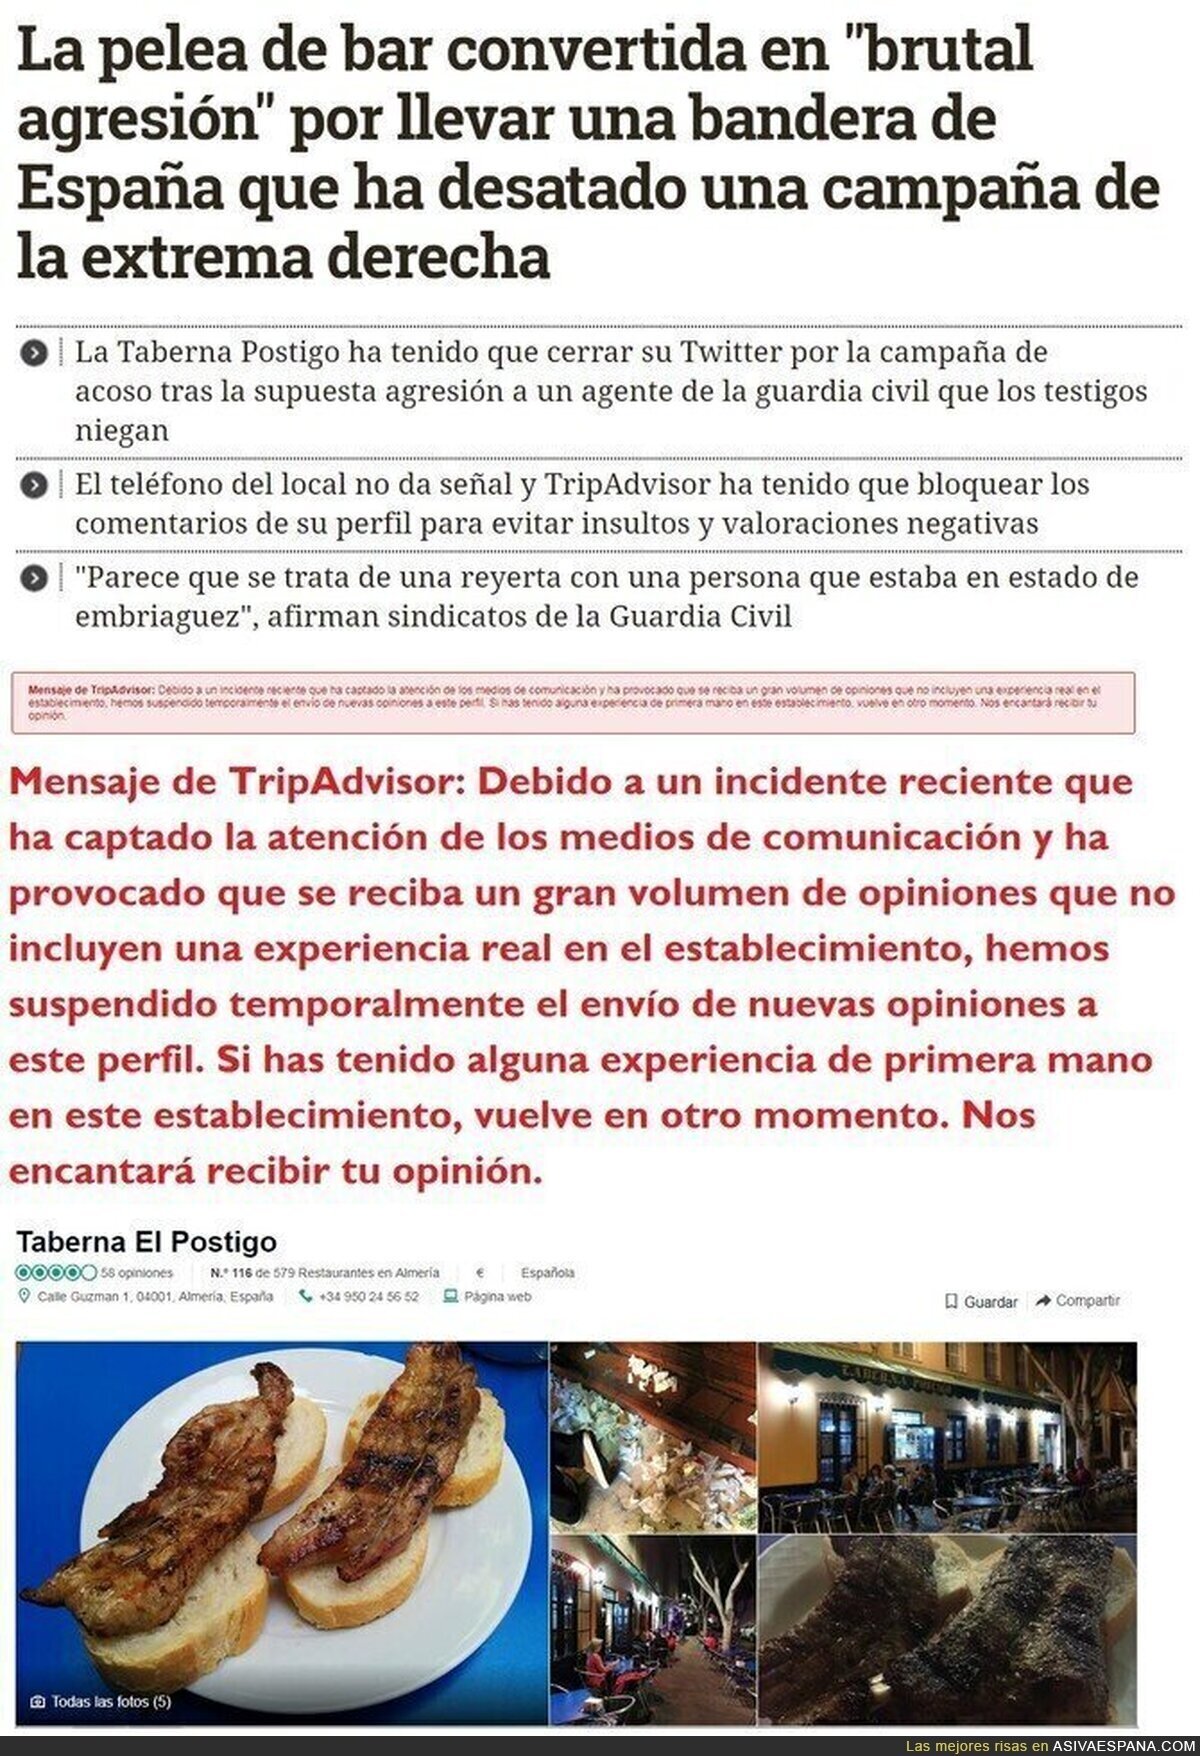 La derecha descerebrada a degüello contra la taberna El Postigo, en Almería, tras este incidente